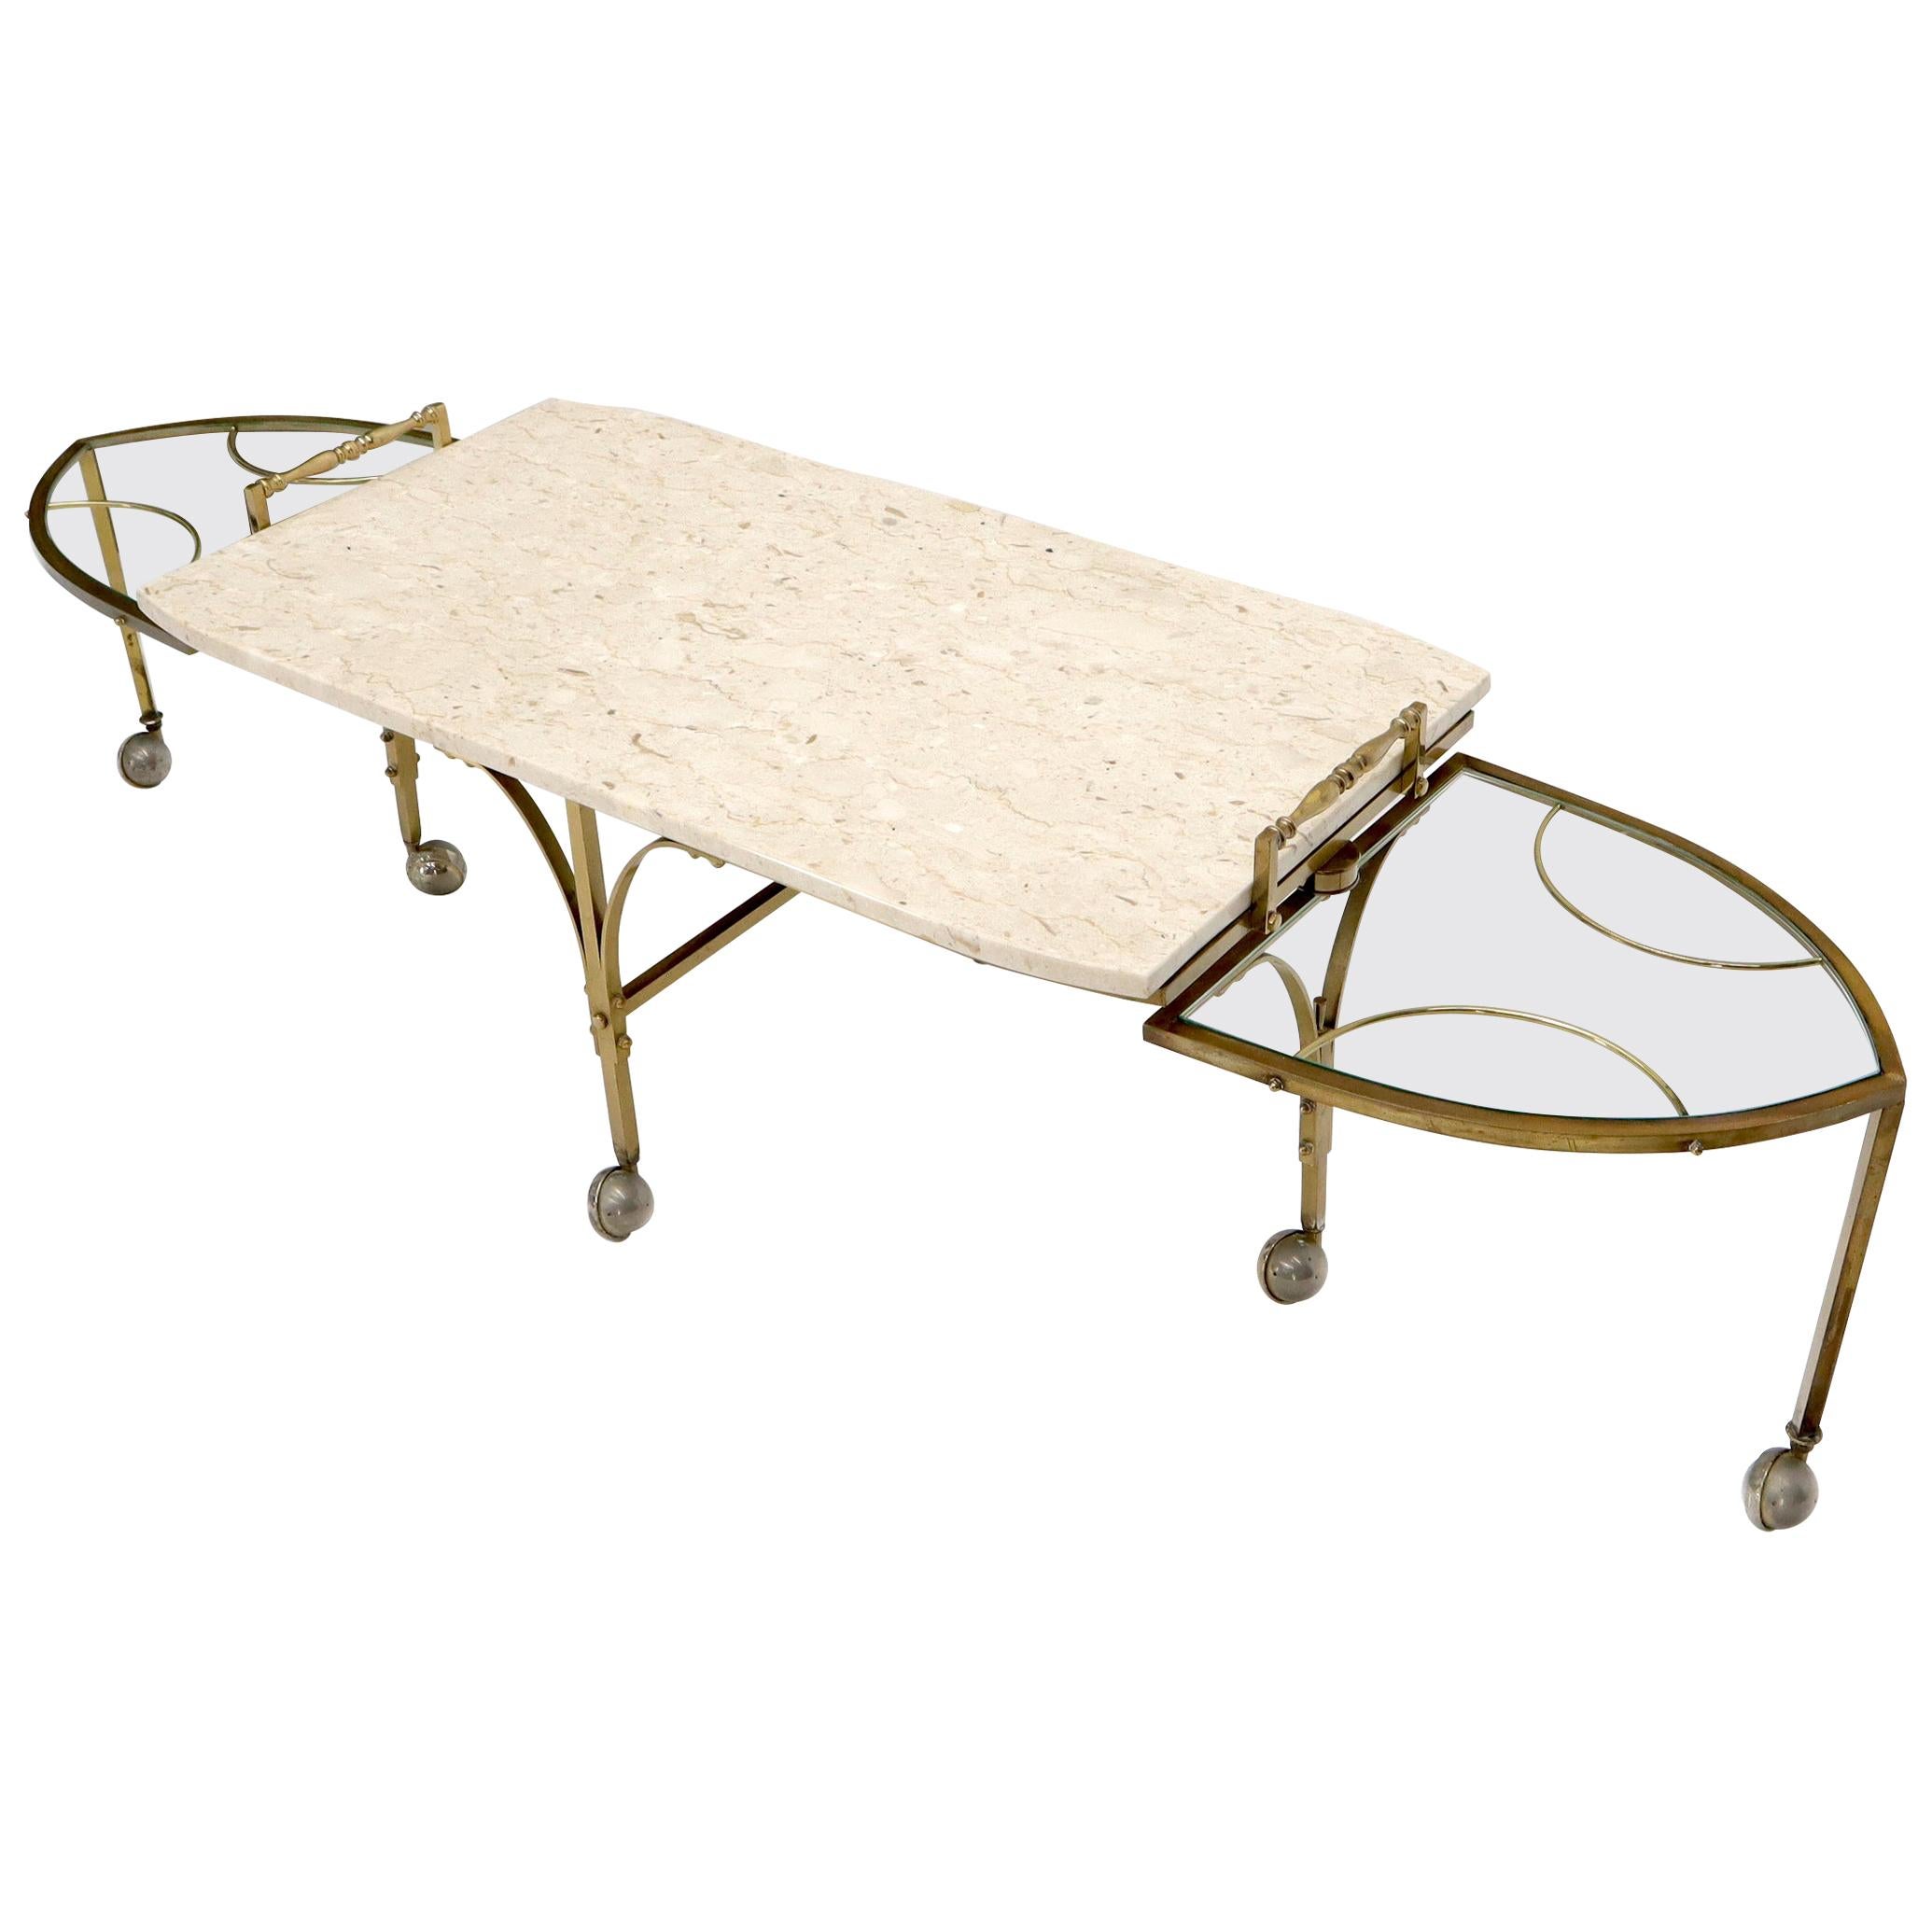 Table basse extensible moderne du milieu du siècle dernier, base en laiton sur roues, plateau en travertin